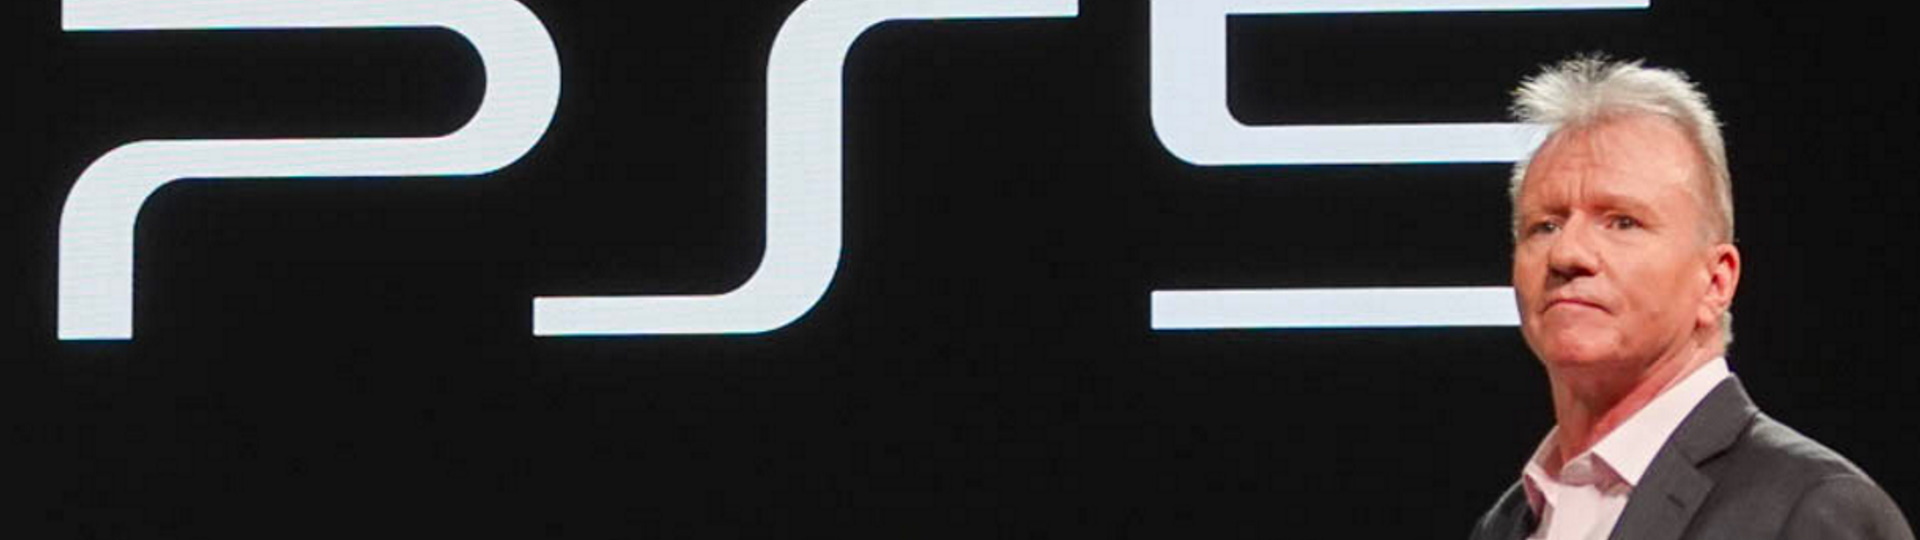 Sony pravděpodobně po E3 nebude ani na Gamescomu | Spekulace